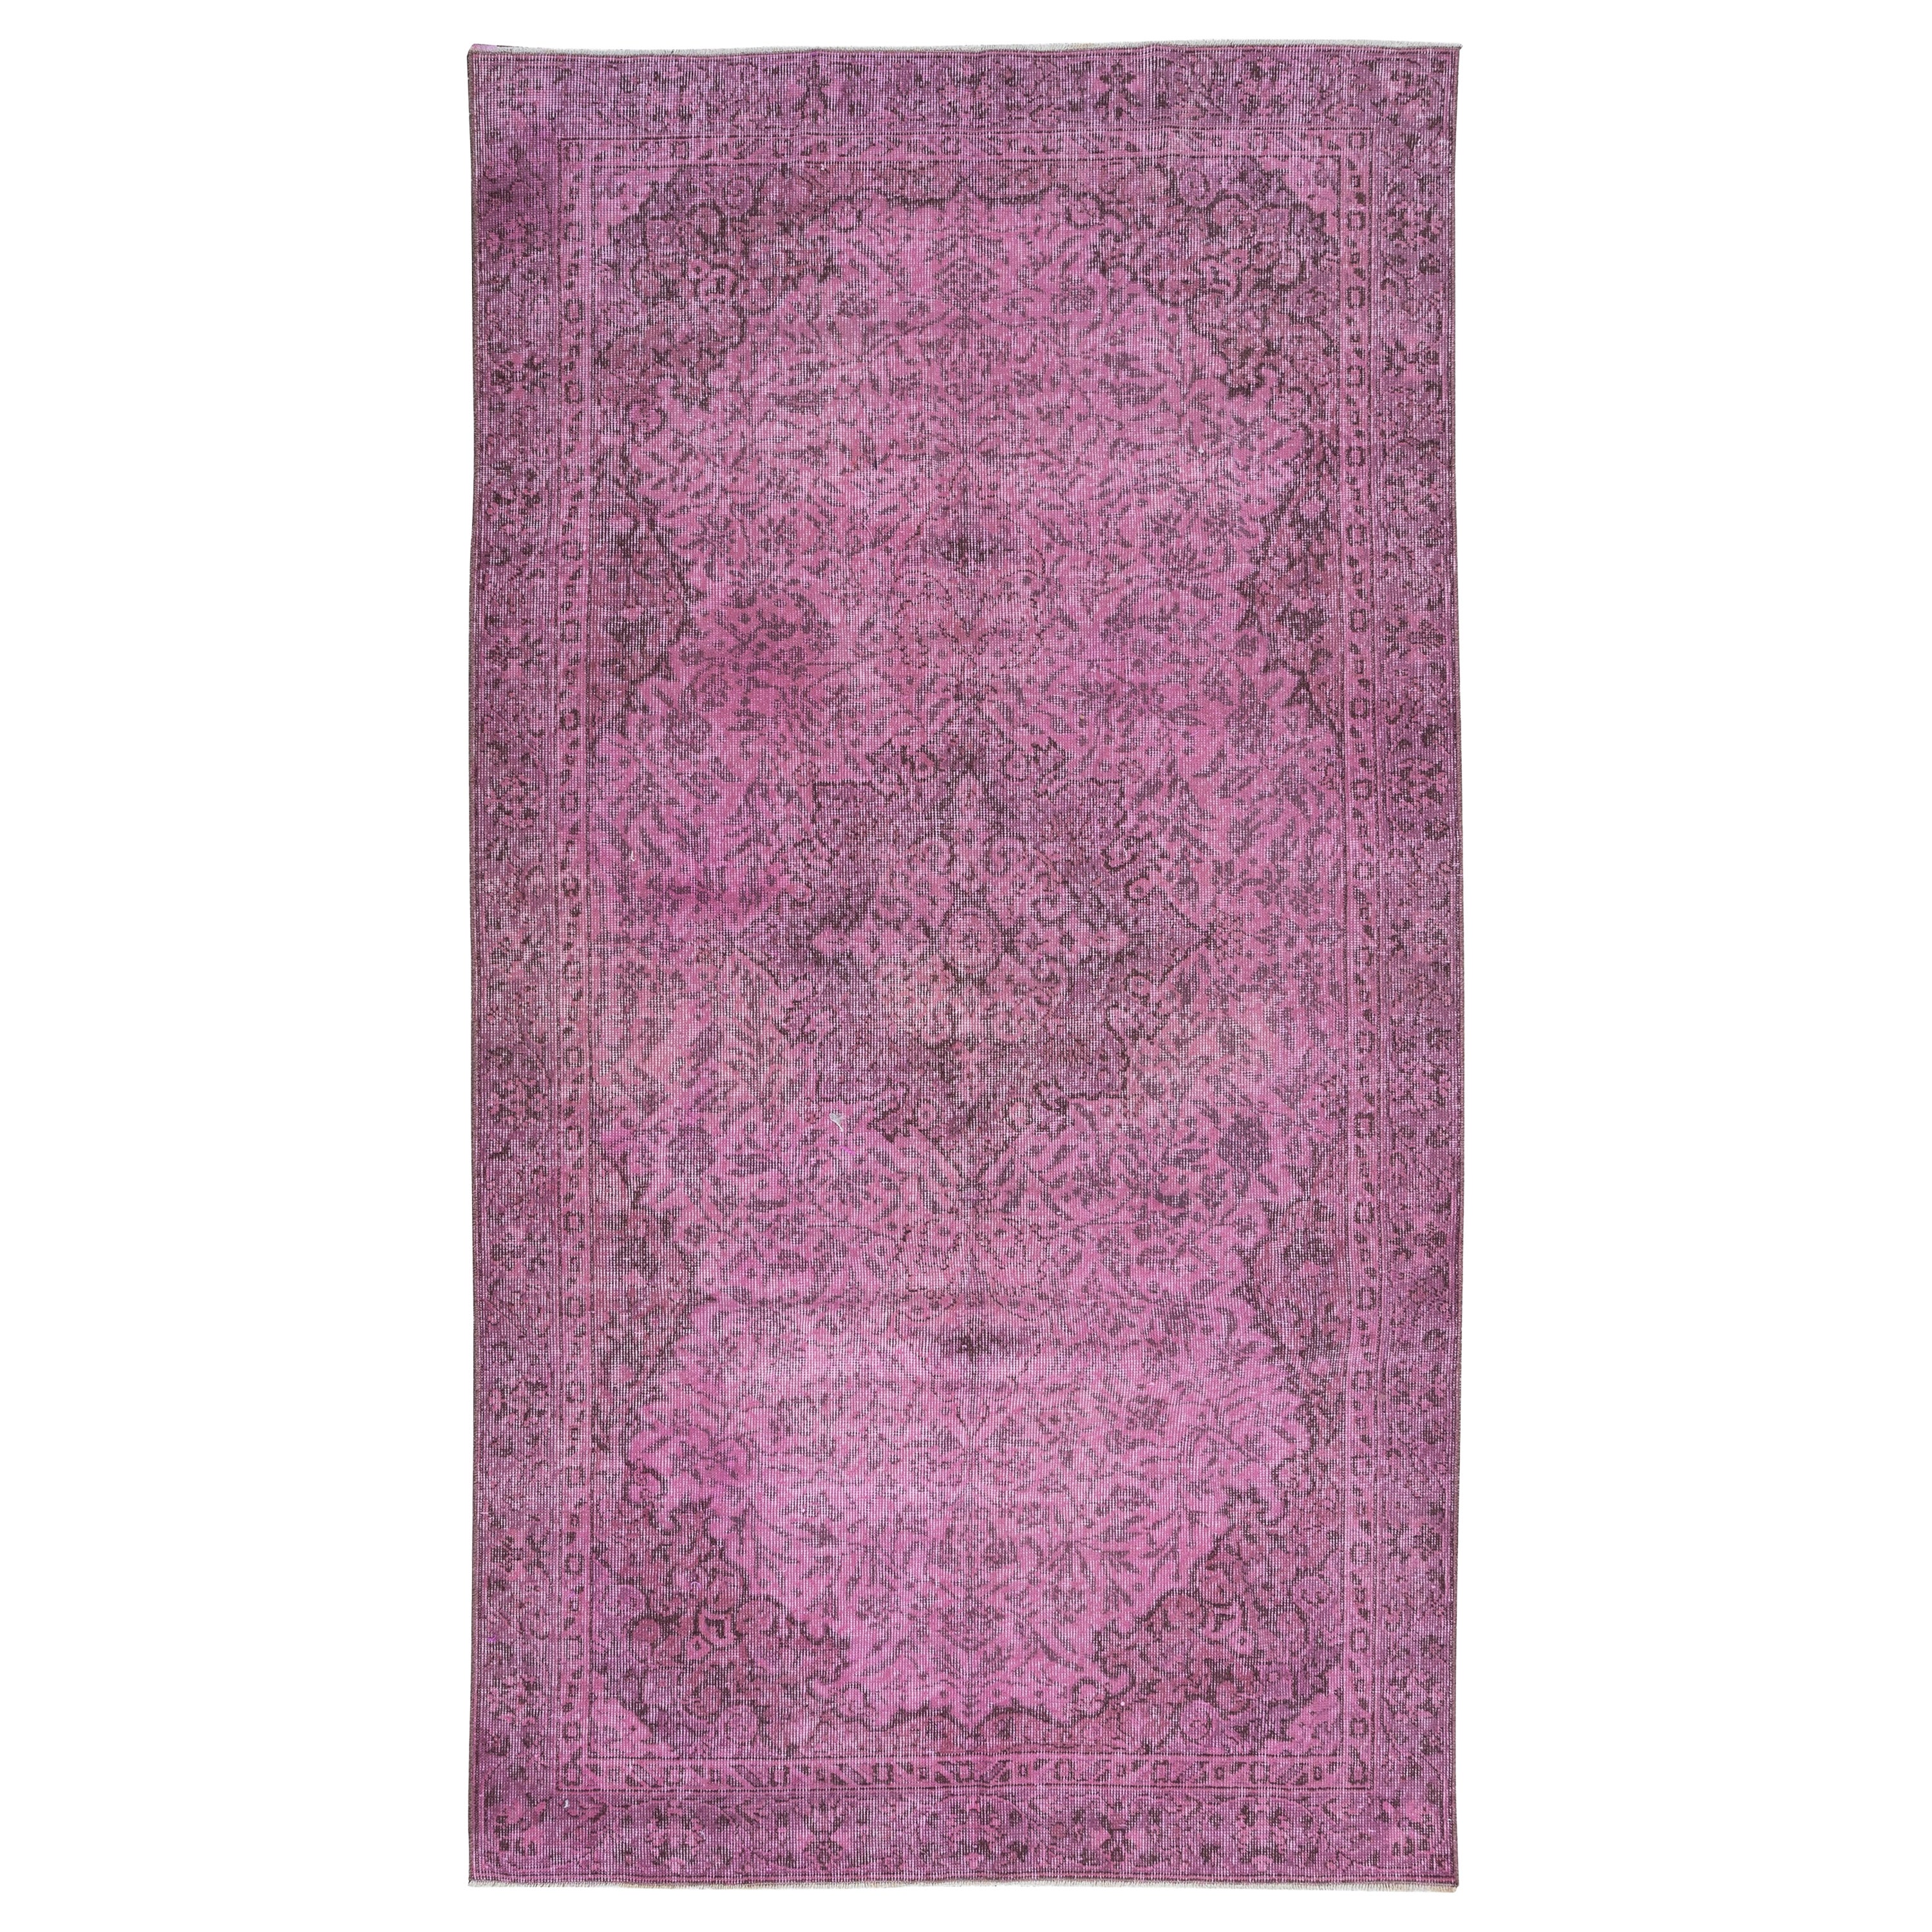 5x8.7 Ft Modernity Floor Area Rug in Pink, Handwoven and Handknotted in Turkey (Tapis de sol moderne en rose, tissé et noué à la main en Turquie) en vente